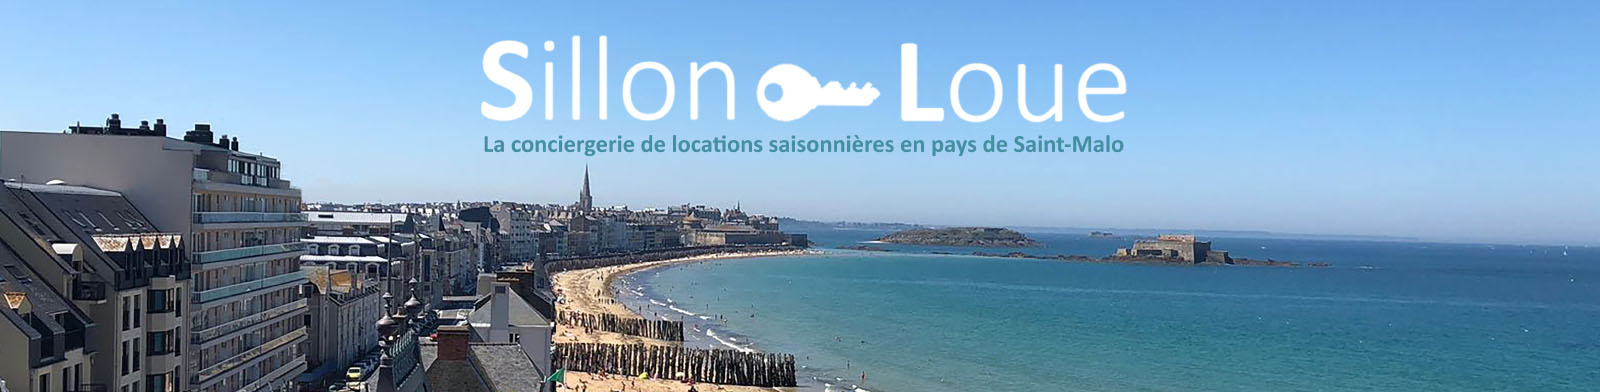 Sillon Loue à Saint-Malo - La conciergerie de locations saisonnières en pays de Saint-Malo